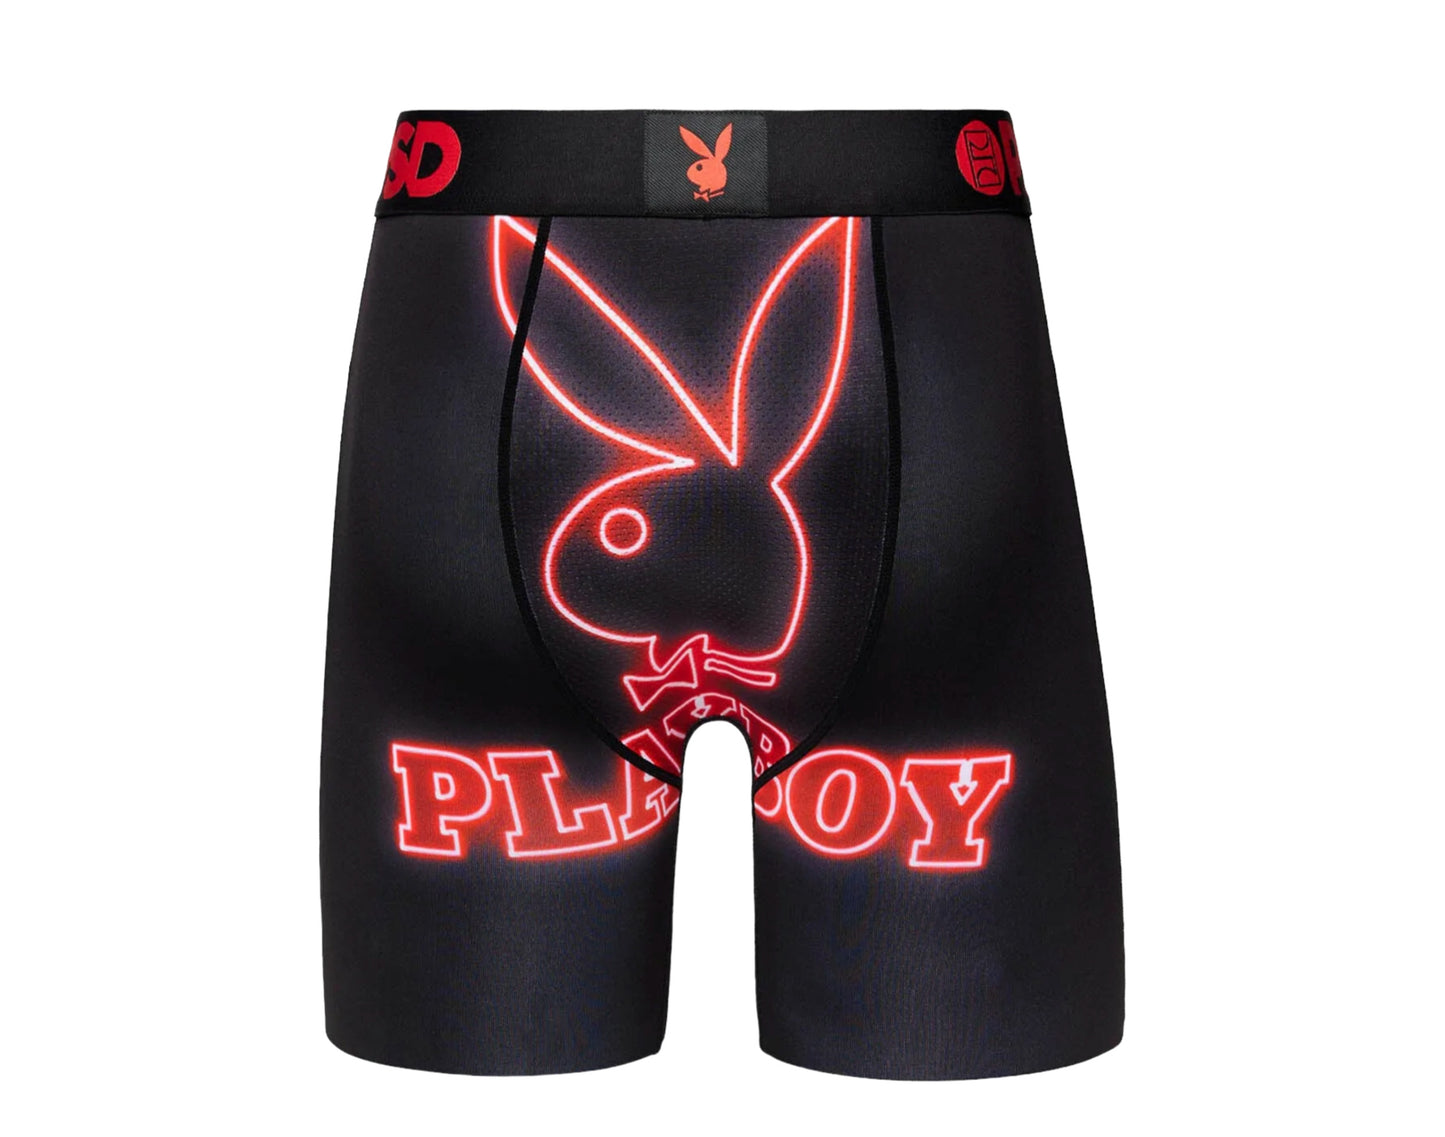 PSD x Playboy - RHD Neon Briefs Men's Underwear